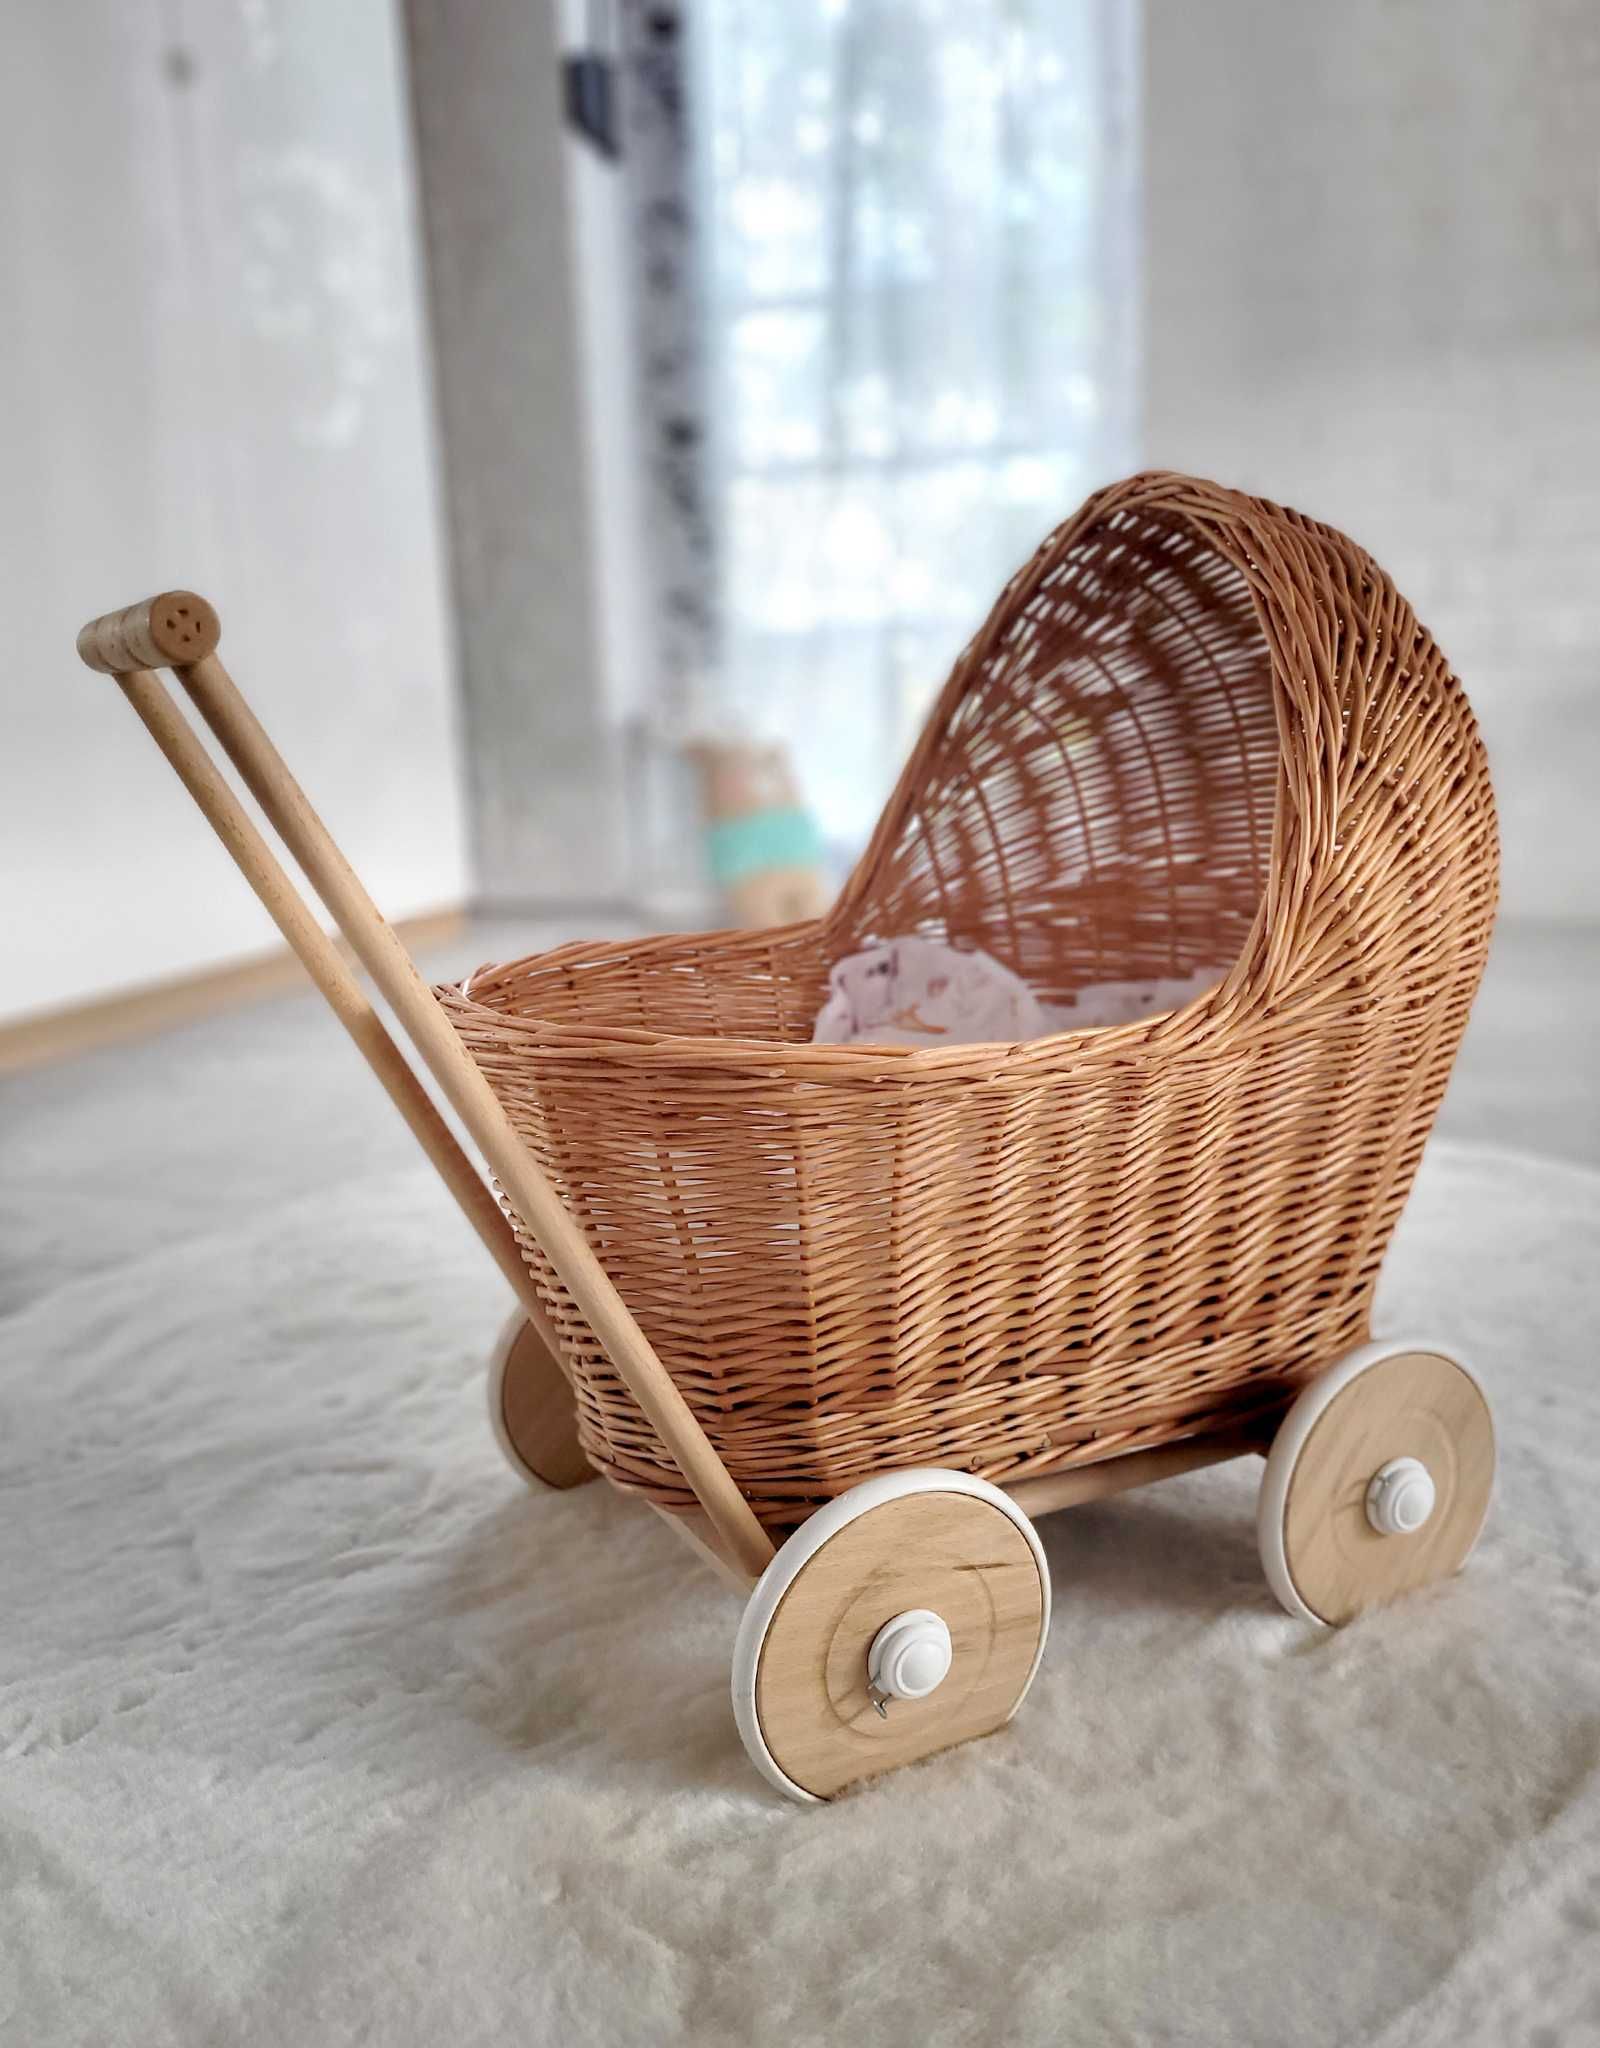 Wózek dla lalek z naturalnej wikliny. Idealny prezent dla dziewczynki